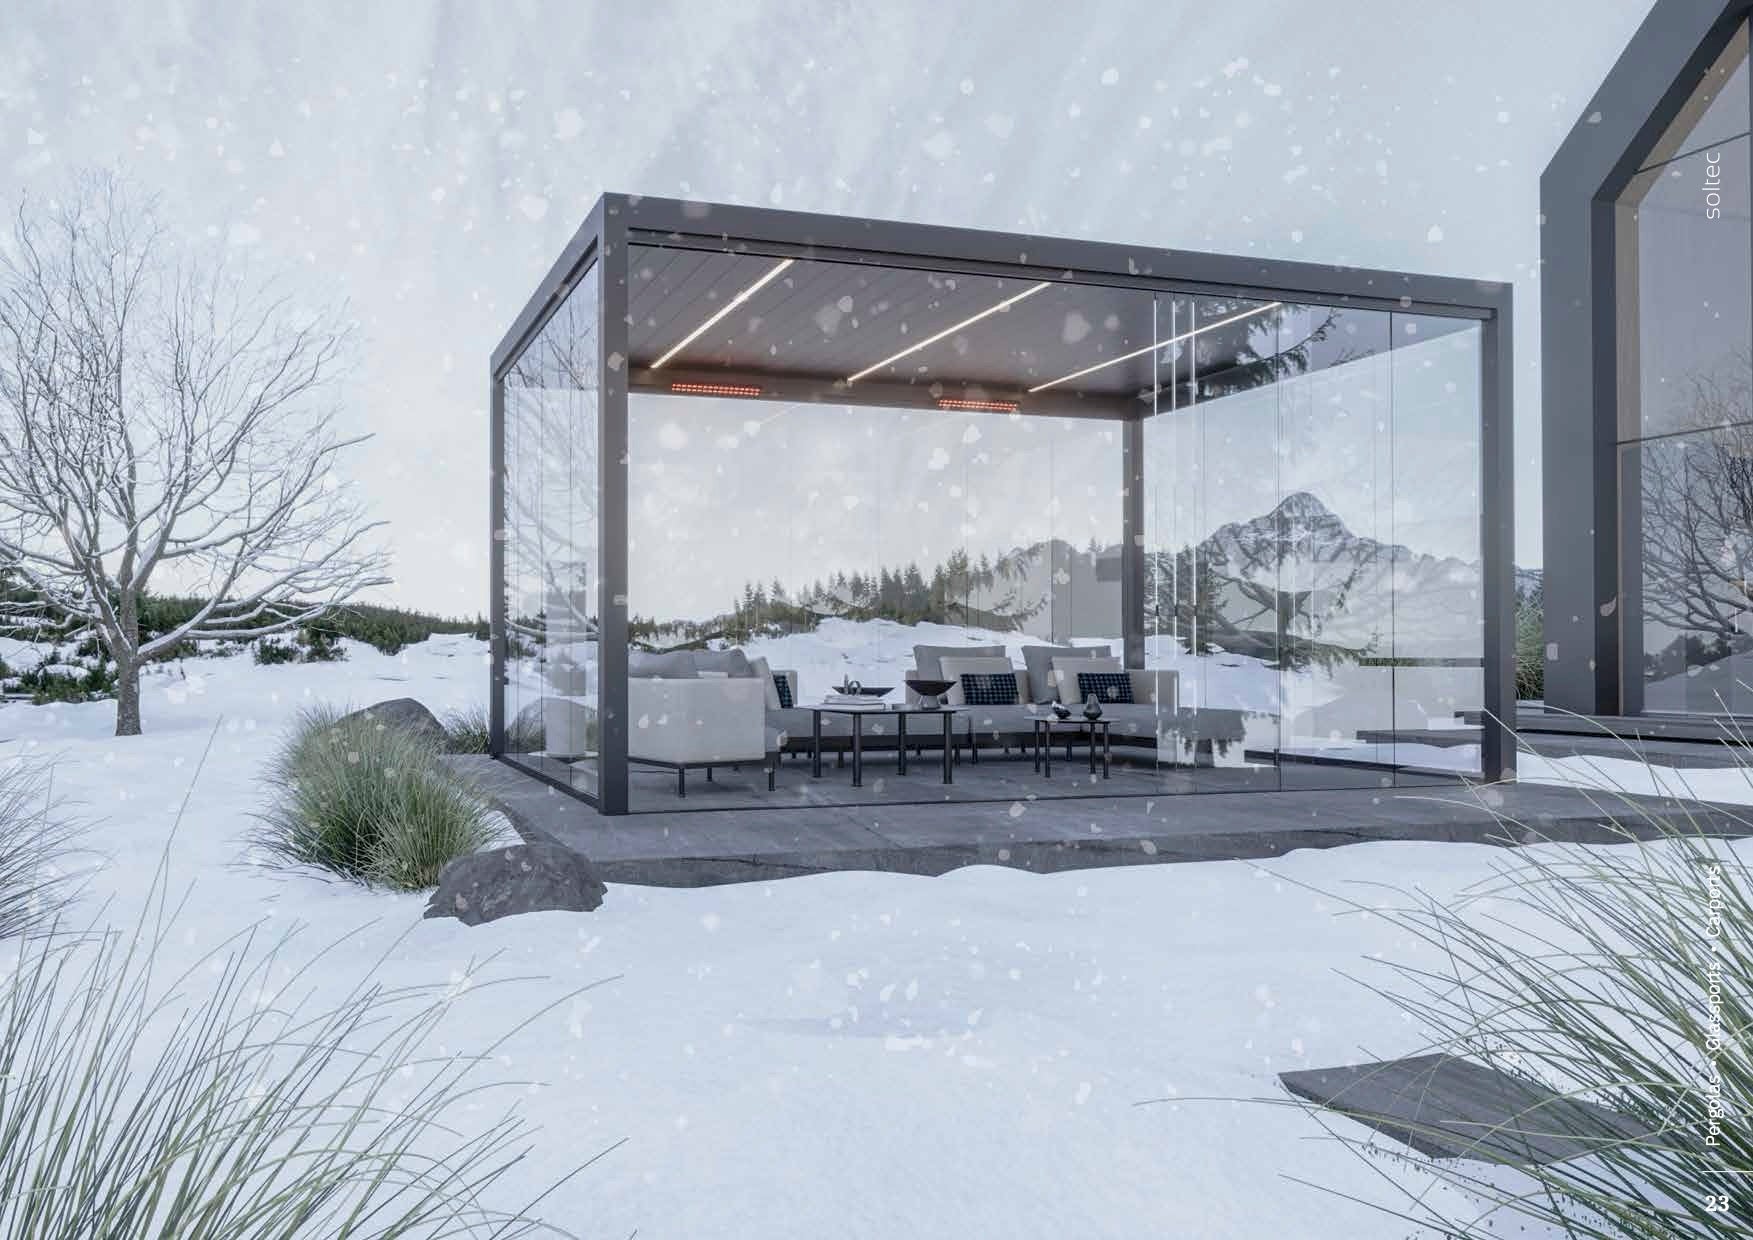 Hliníková, elegantná, moderná bioklimatická pergola od Agava v zime s nastaviteľnými lamelami strechy a bočnými panelmi pre prispôsobiteľný tieň a prietok vzduchu